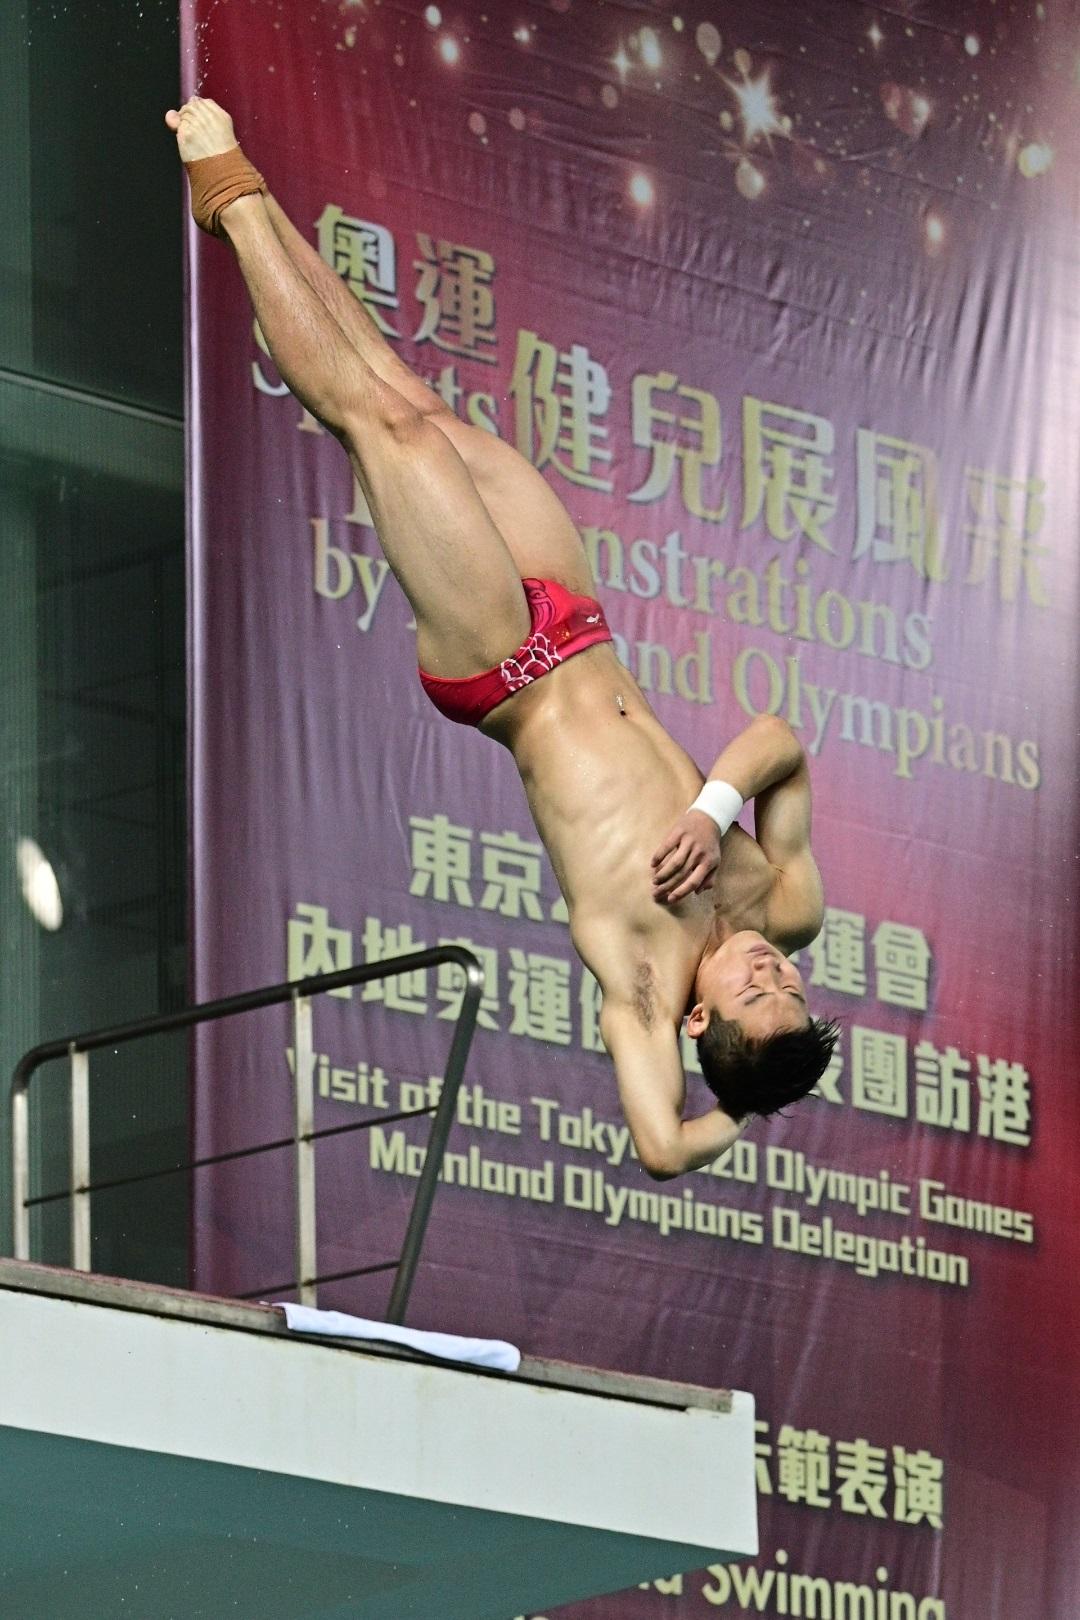 东京2020奥运会内地奥运健儿代表团今日（十二月四日）上午出席在维多利亚公园游泳池举行的「奥运健儿展风采」运动示范。图示内地跳水运动员王宗源作跳水示范表演，展示高超技艺。